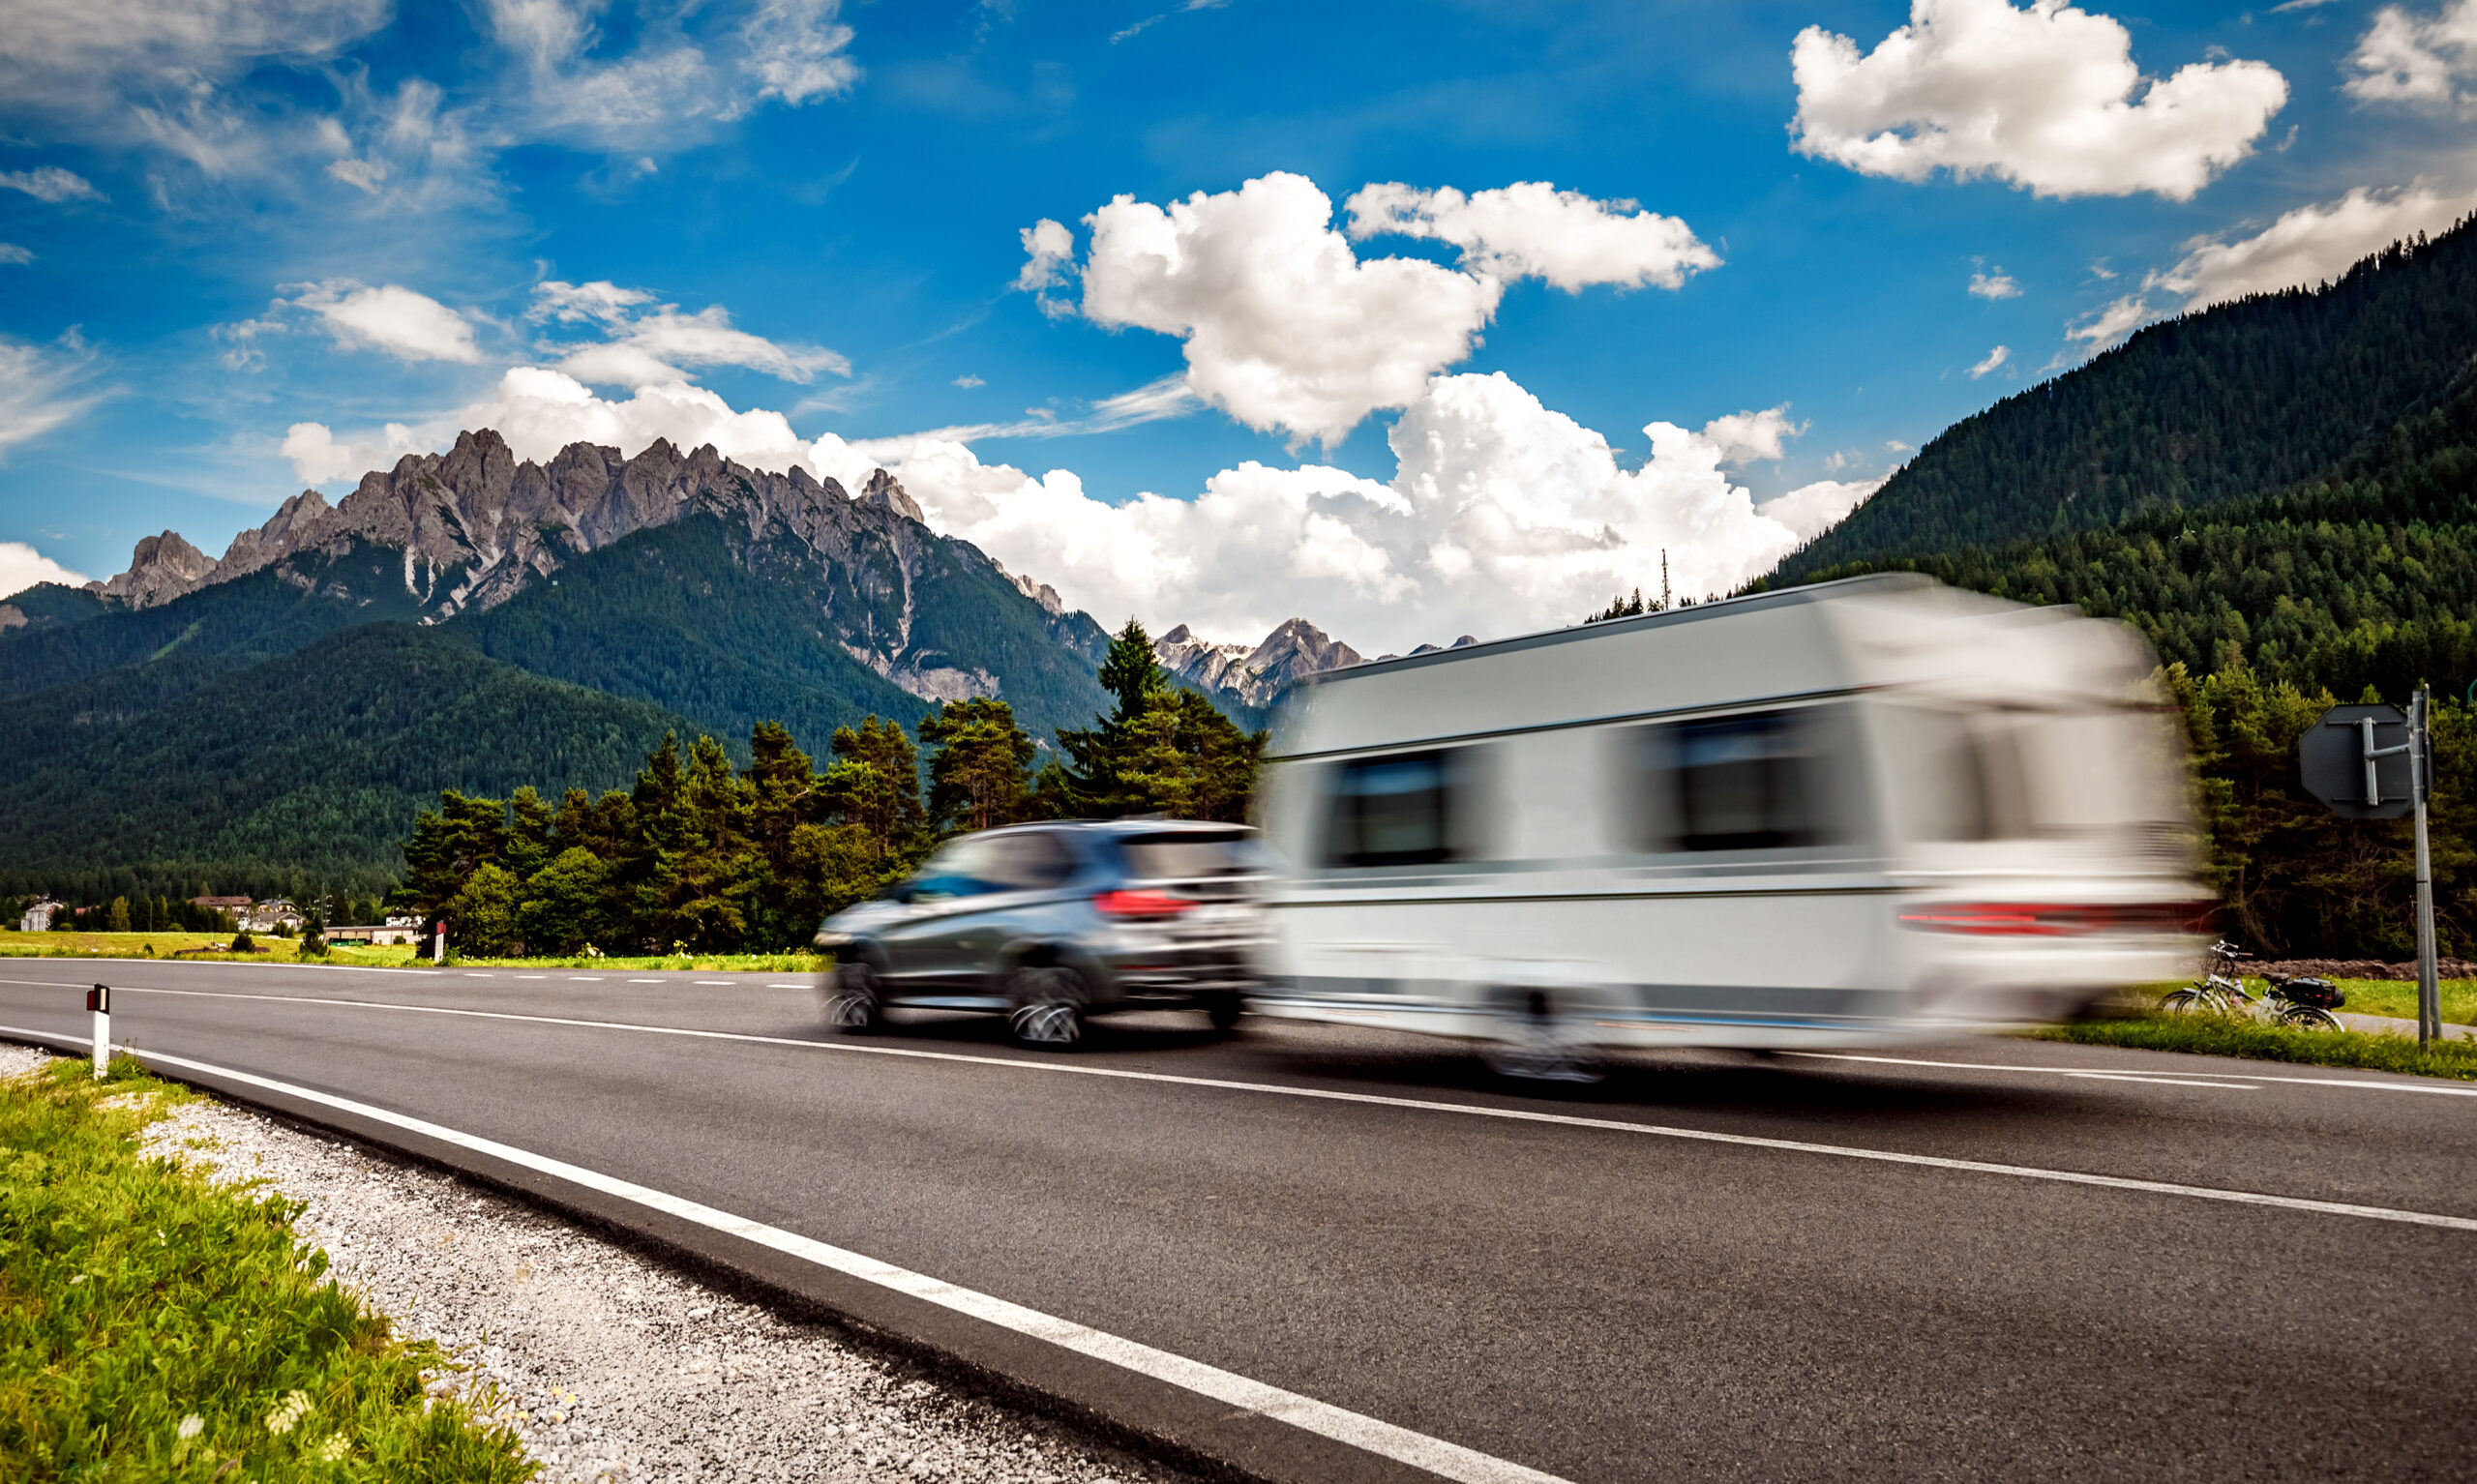 Familienurlaub, Ferien auf dem Wohnmobil, Caravan Auto Urlaub. Schöne Natur Italien Naturlandschaft Alpen.